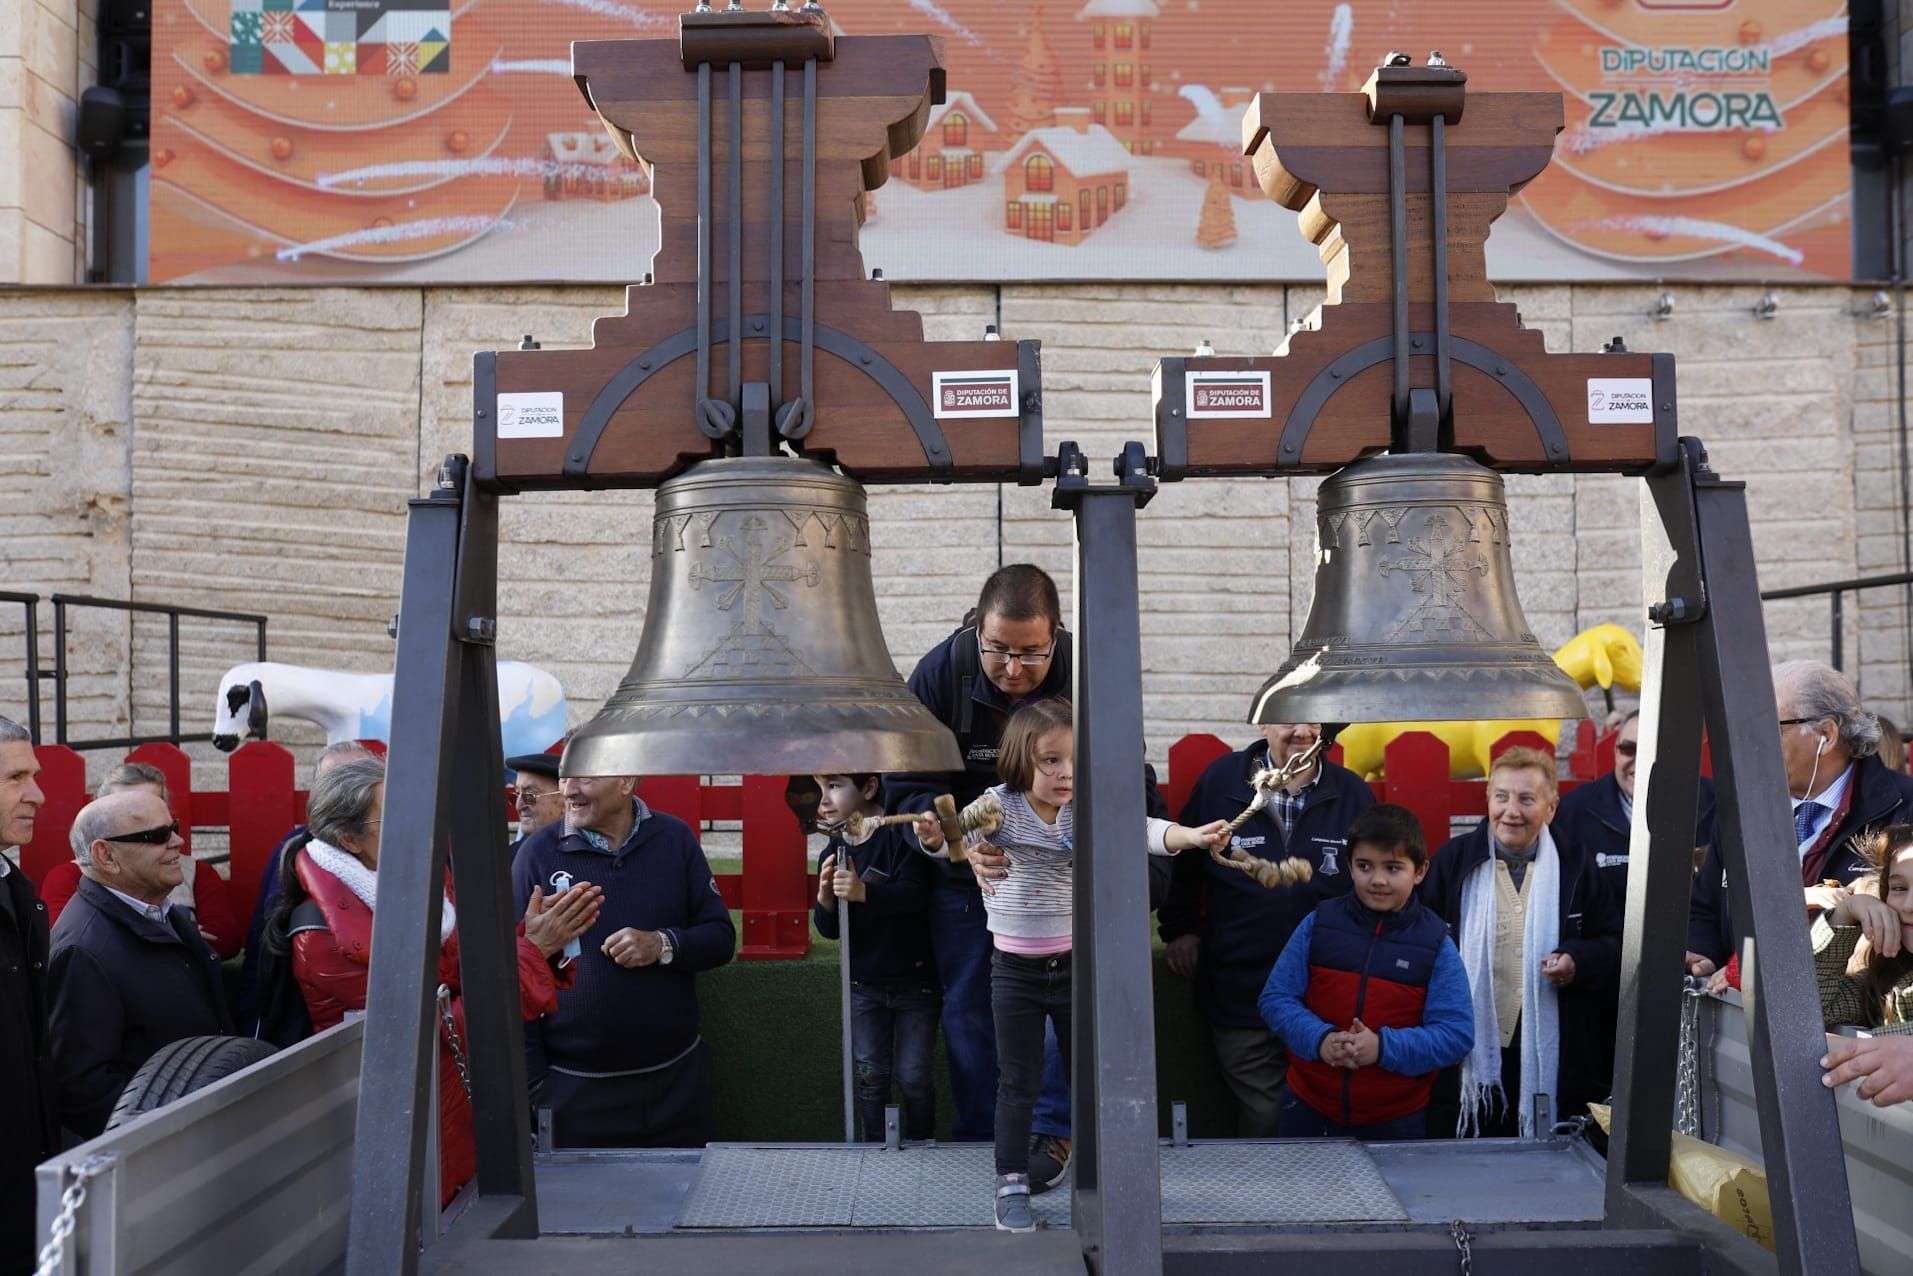 GALERÍA | Las 12 campanadas de Fromago en Zamora, en imágnes